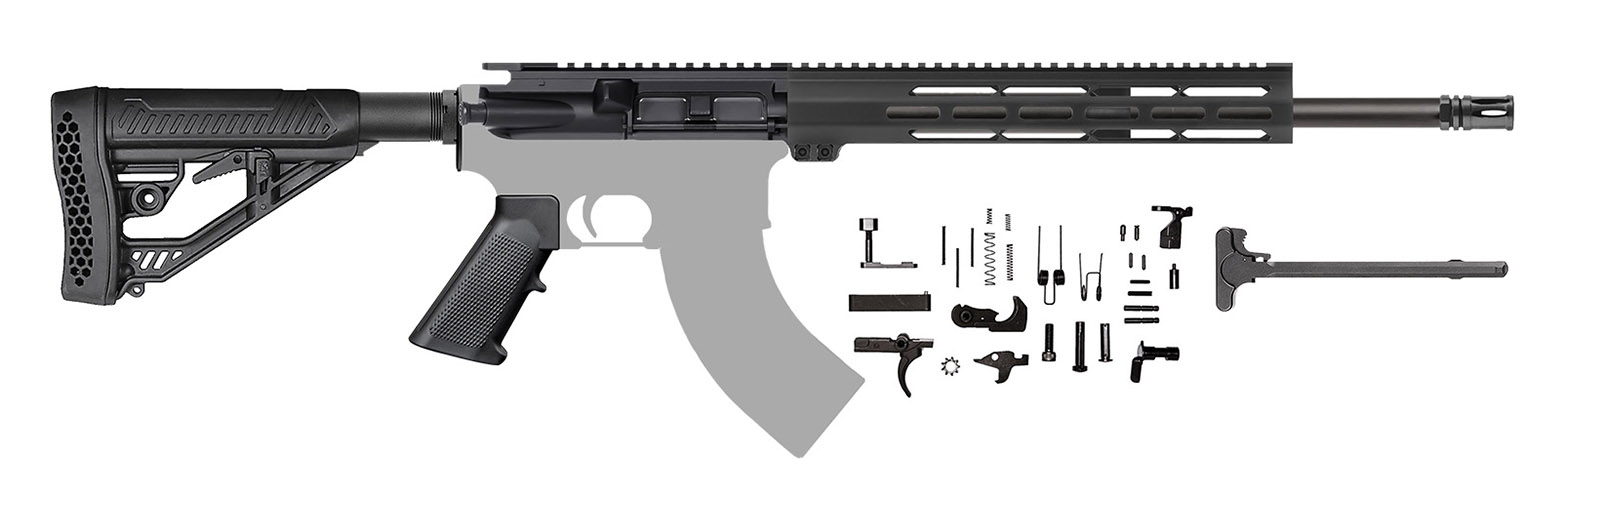 ar15-blemished-rifle-kit